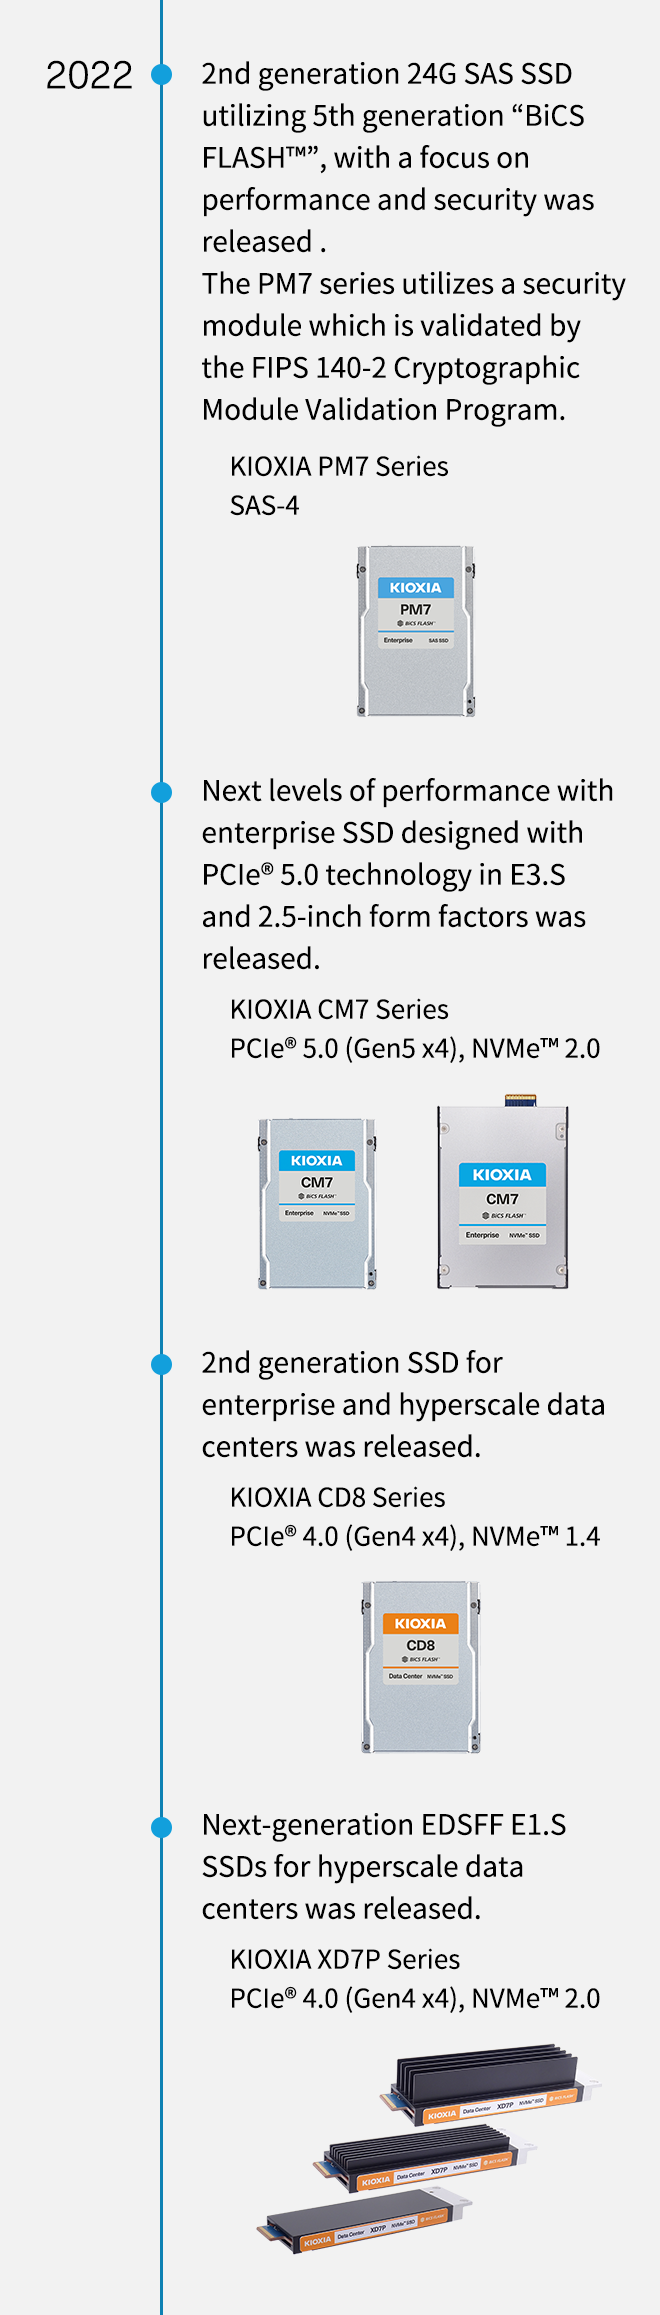 2022 r. Wprowadzono dysk SSD 24G SAS drugiej generacji wykorzystujący technologię piątej generacji „BiCS FLASH™” z naciskiem na wydajność i bezpieczeństwo. Seria PM7 wykorzystuje moduł bezpieczeństwa zatwierdzony przez program walidacji modułów kryptograficznych FIPS 140-2. KIOXIA seria PM7 SAS-4. Wprowadzono dyski SSD dla przedsiębiorstw o wyższym poziomie wydajności, wykorzystujące technologię PCIe® 5.0 w obudowach typu E3.S i 2,5 cala. Wprowadzono dysk drugiej generacji SSD serii KIOXIA CM7 PCIe® 5.0 (Gen5 x4), NVMe™ 2.0 dla korporacyjnych i hiperskalowych centrów danych. KIOXIA seria CD8 PCIe® 4.0 (Gen4 x4), NVMe™ 1.4. Wprowadzono dyski SSD EDSFF E1.S kolejnej generacji do hyperskalowych centrów danych. KIOXIA seria XD7P PCIe® 4.0 (Gen4 x4), NVMe™ 2.0